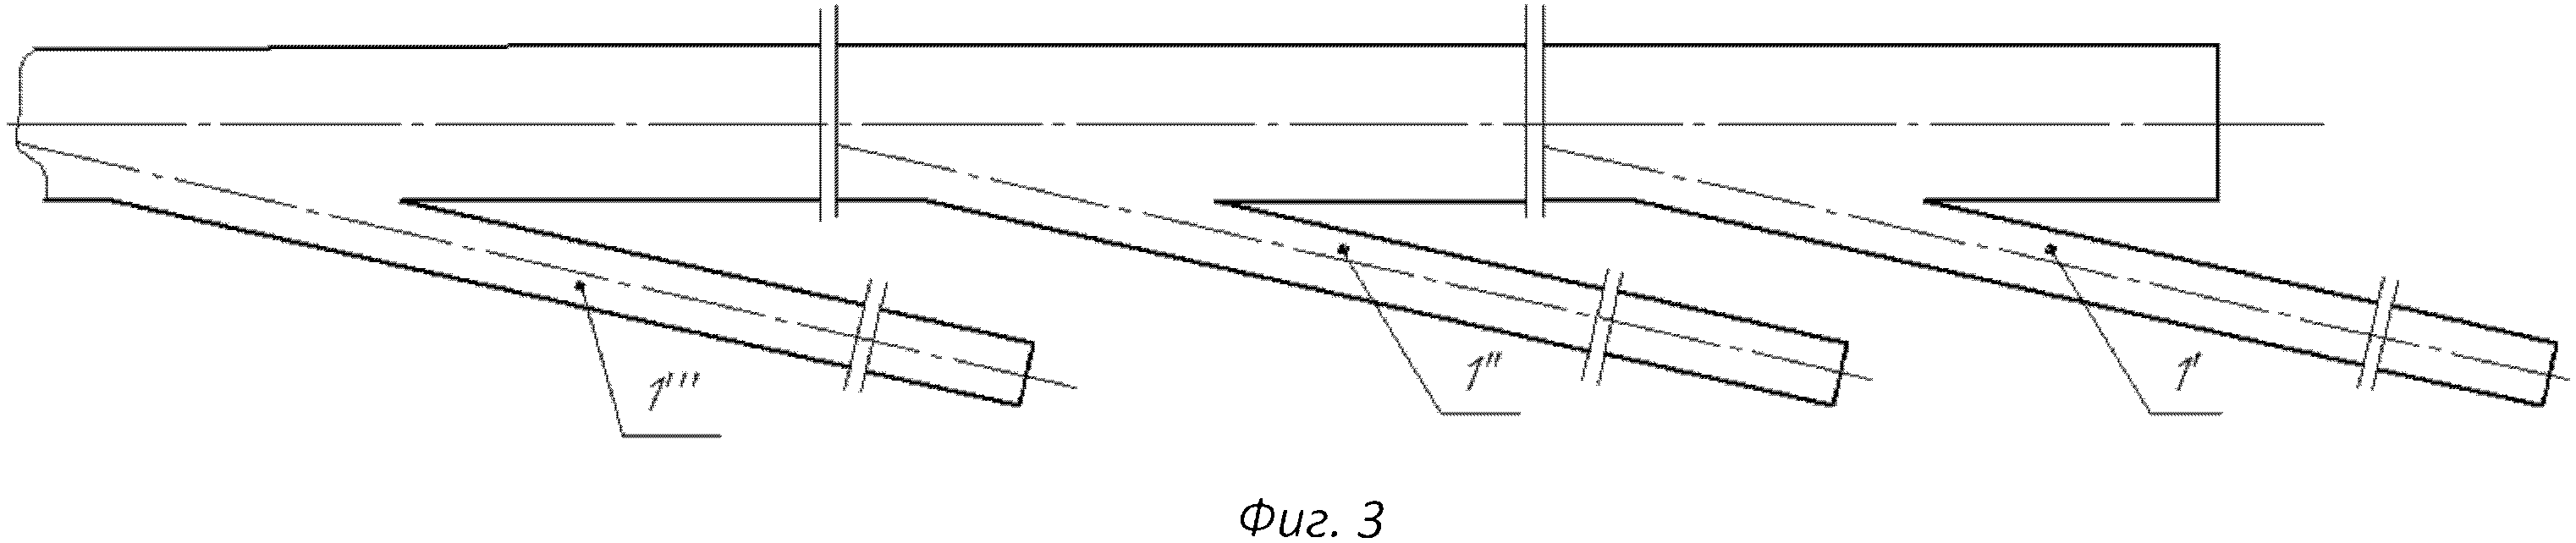 Компоновка низа бурильной колонны для бурения боковых стволов из горизонтальной части необсаженной скважины